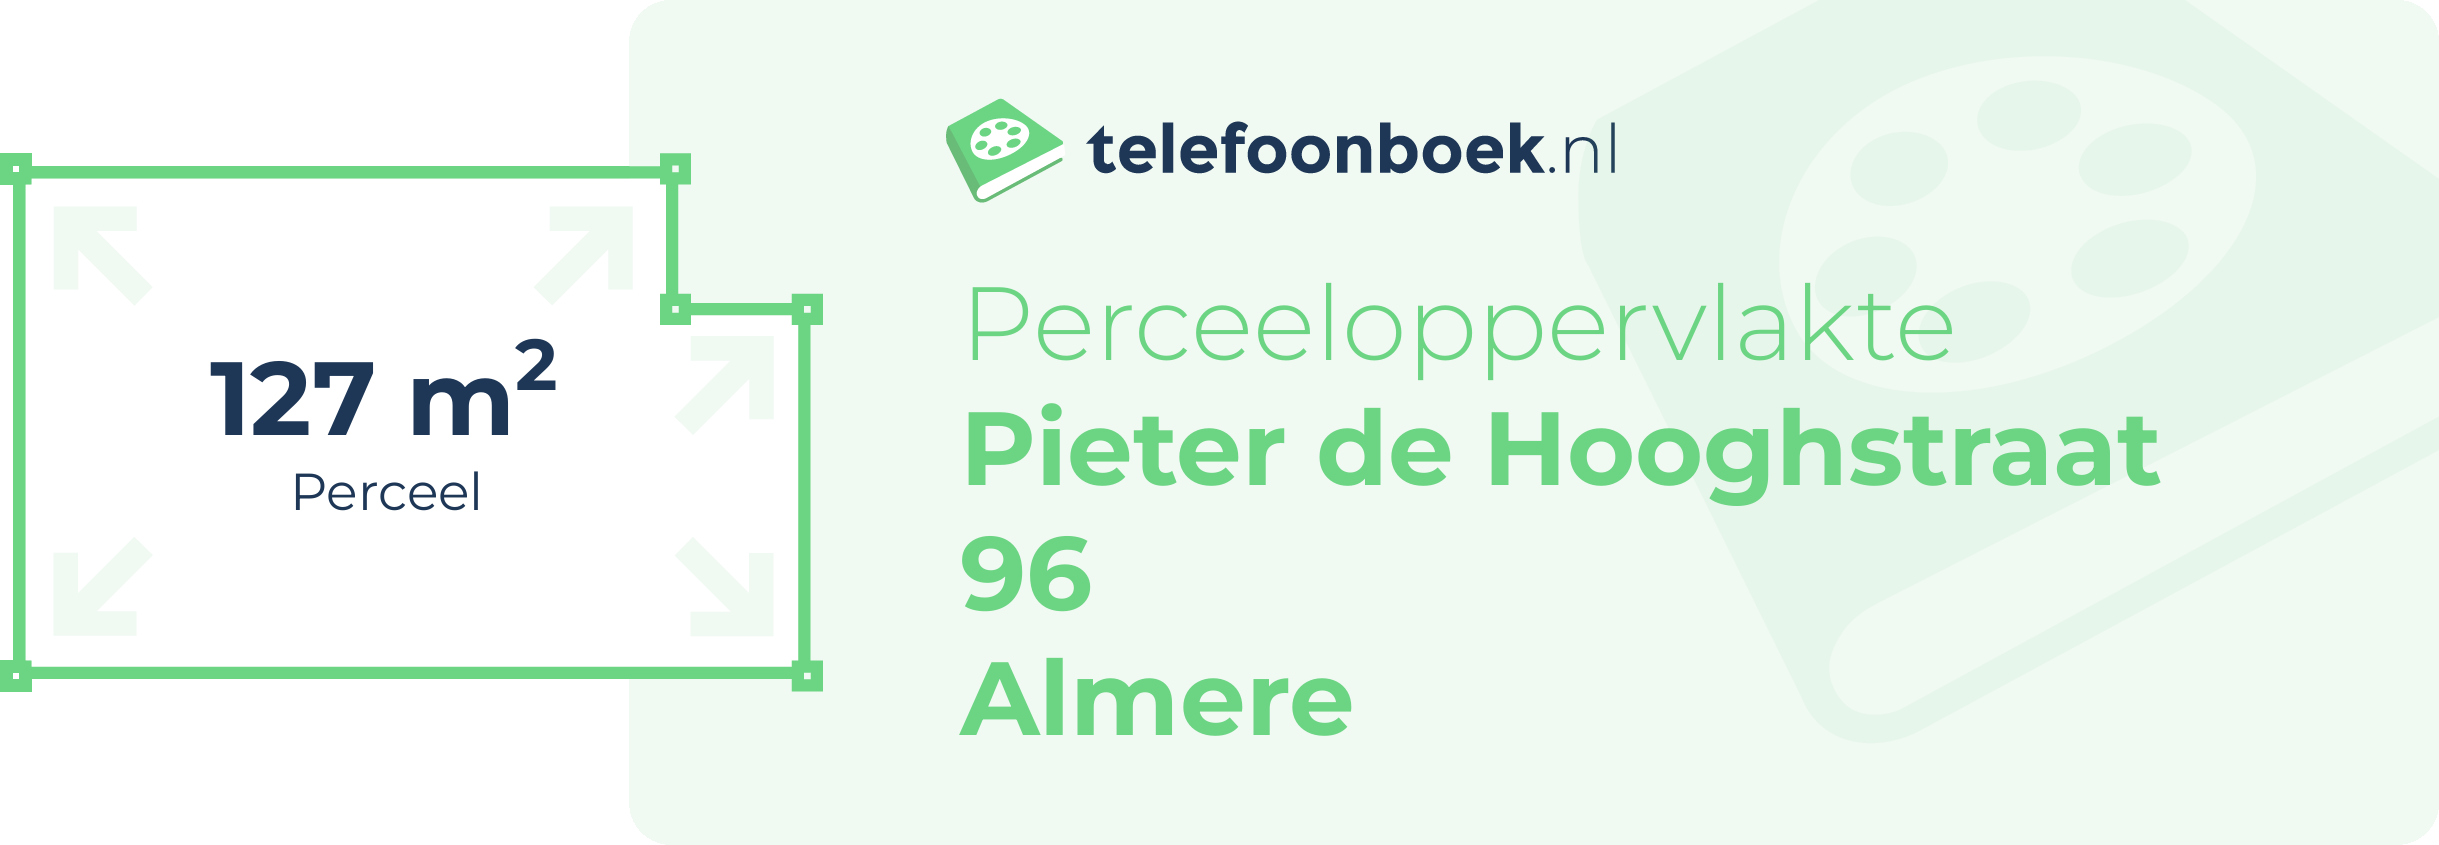 Perceeloppervlakte Pieter De Hooghstraat 96 Almere